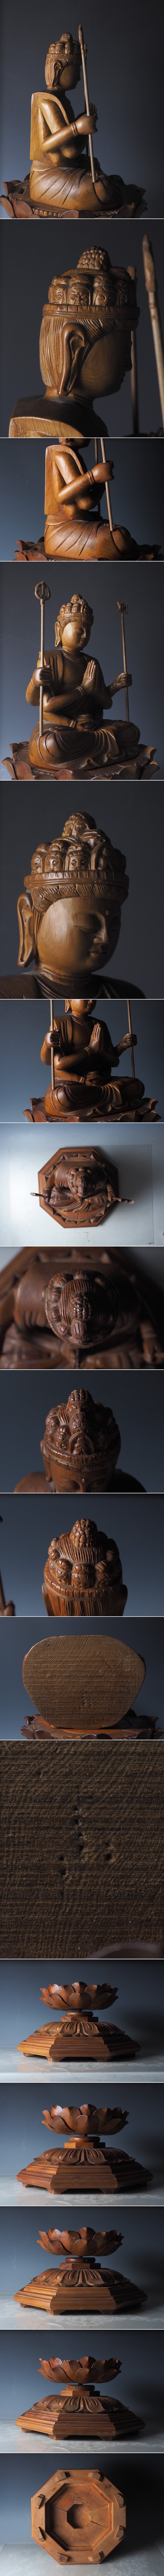 限定セールHOTyjq33_旧家初出 時代 木彫 千手観音像 仏教美術 高さ62cm 仏像